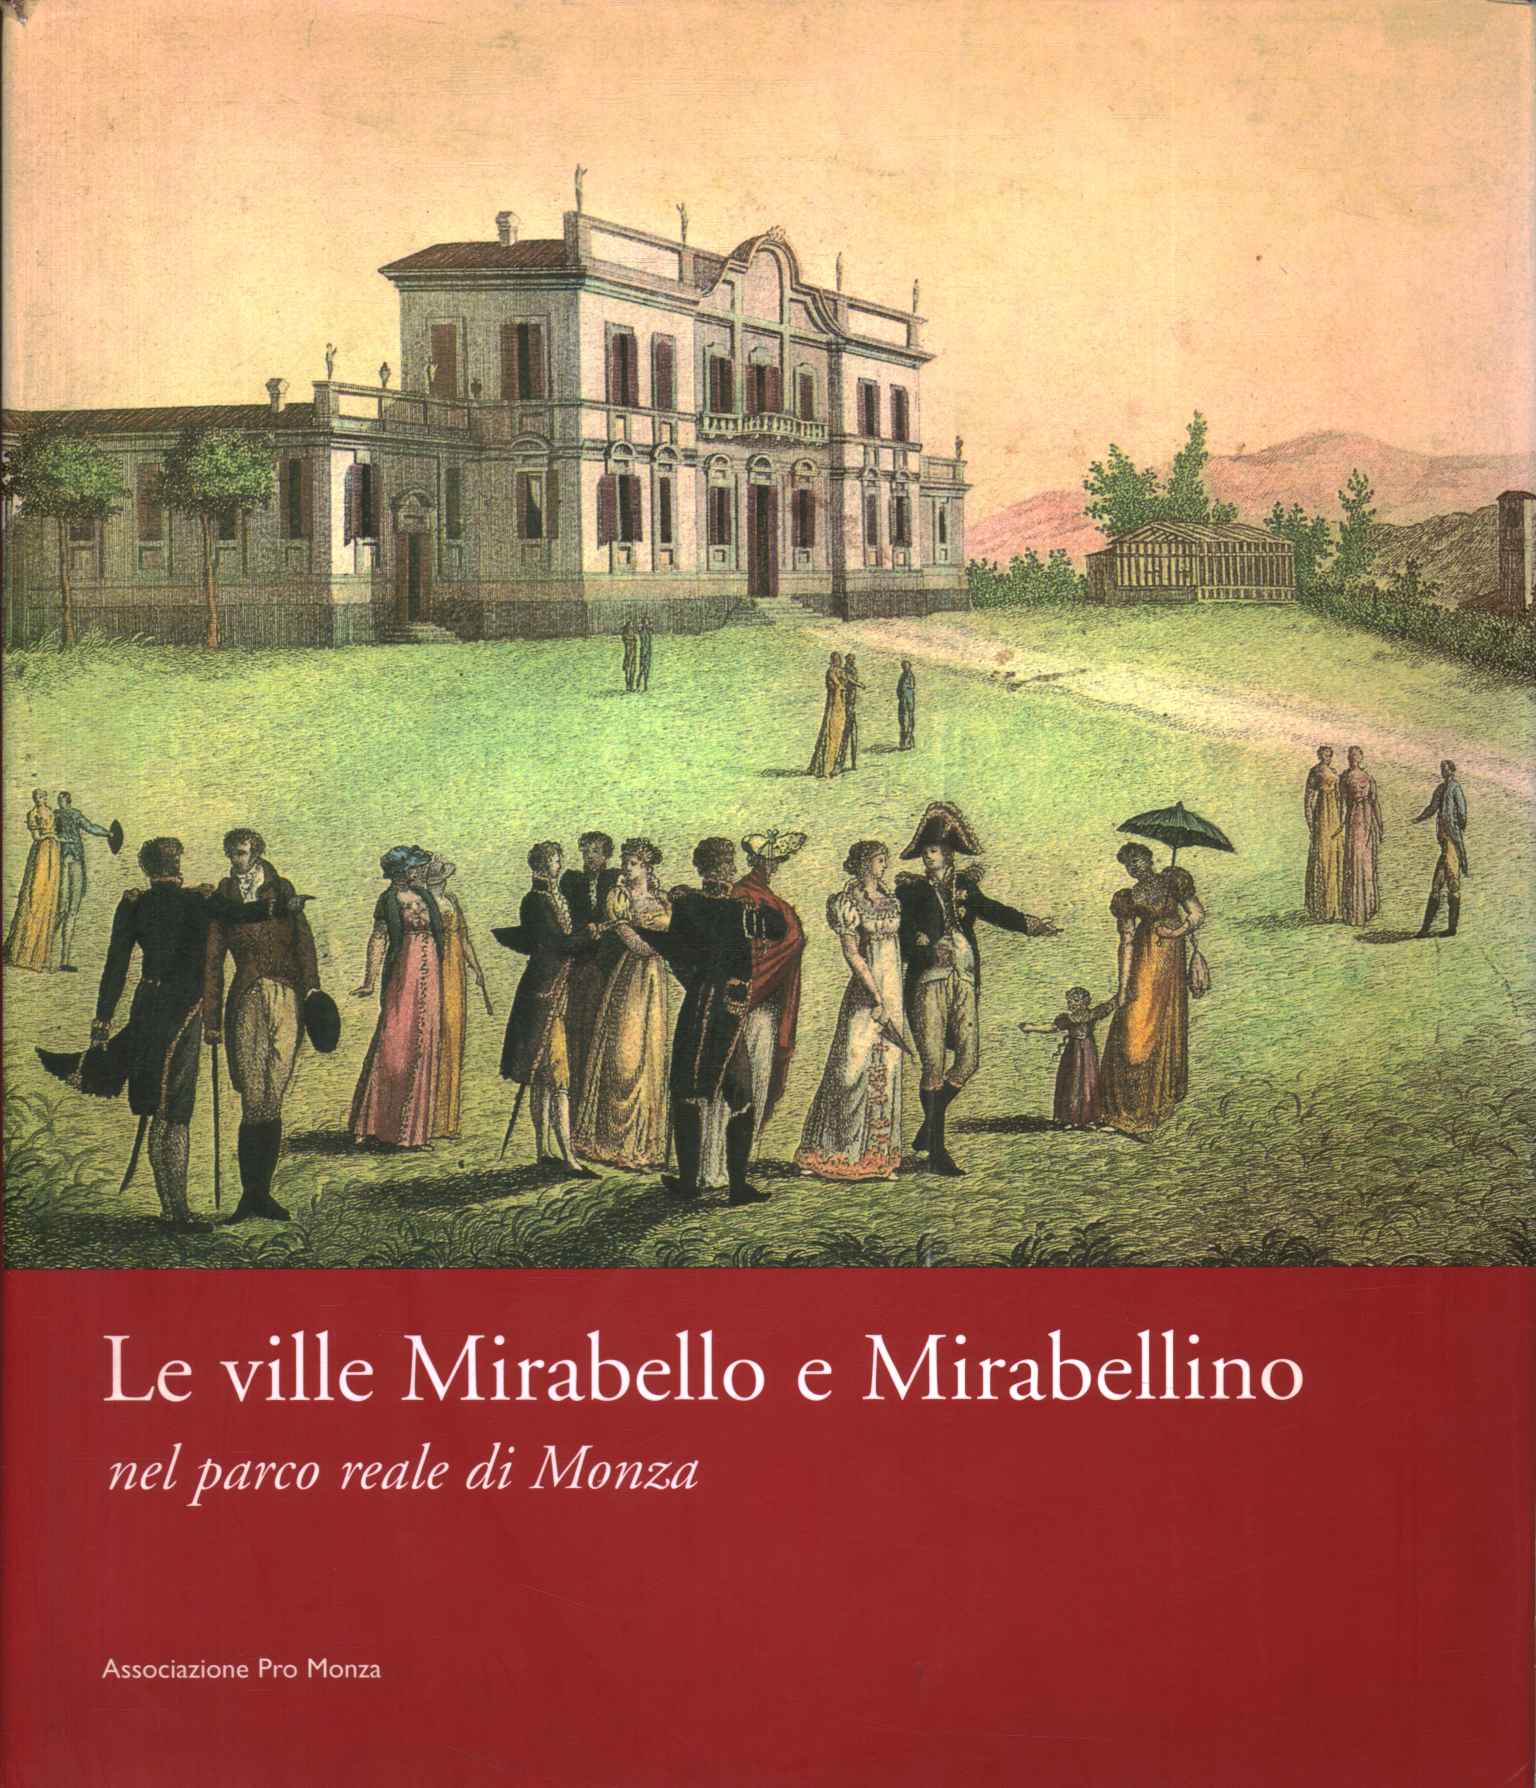 Las villas Mirabello y Mirabellino